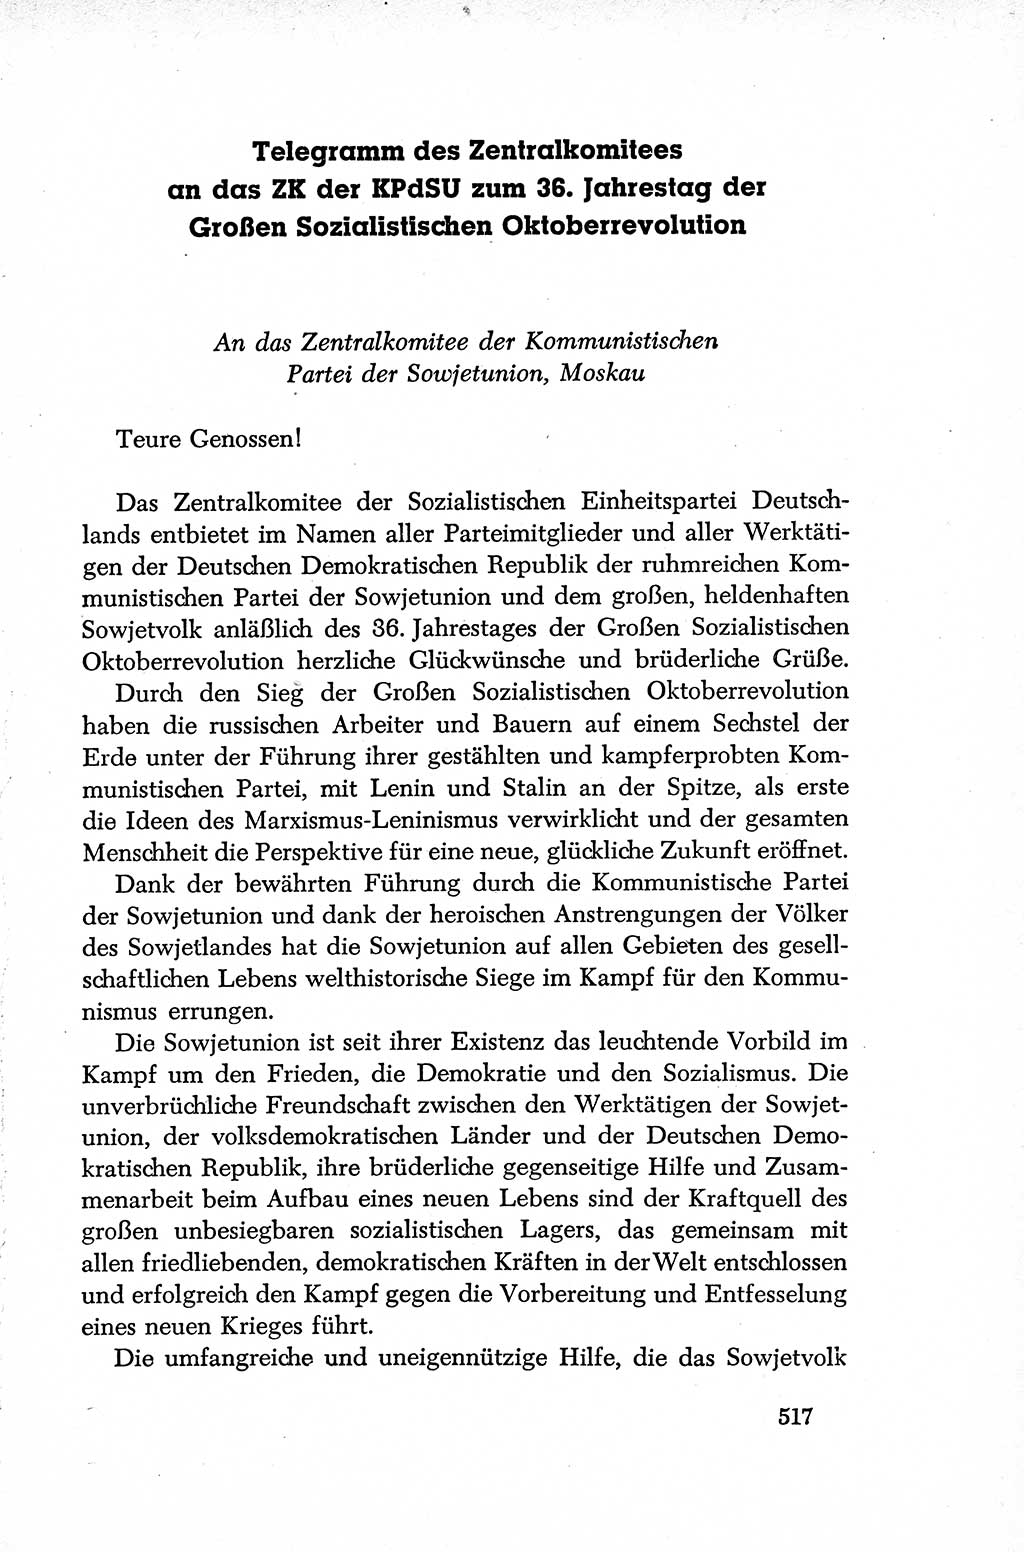 Dokumente der Sozialistischen Einheitspartei Deutschlands (SED) [Deutsche Demokratische Republik (DDR)] 1952-1953, Seite 517 (Dok. SED DDR 1952-1953, S. 517)